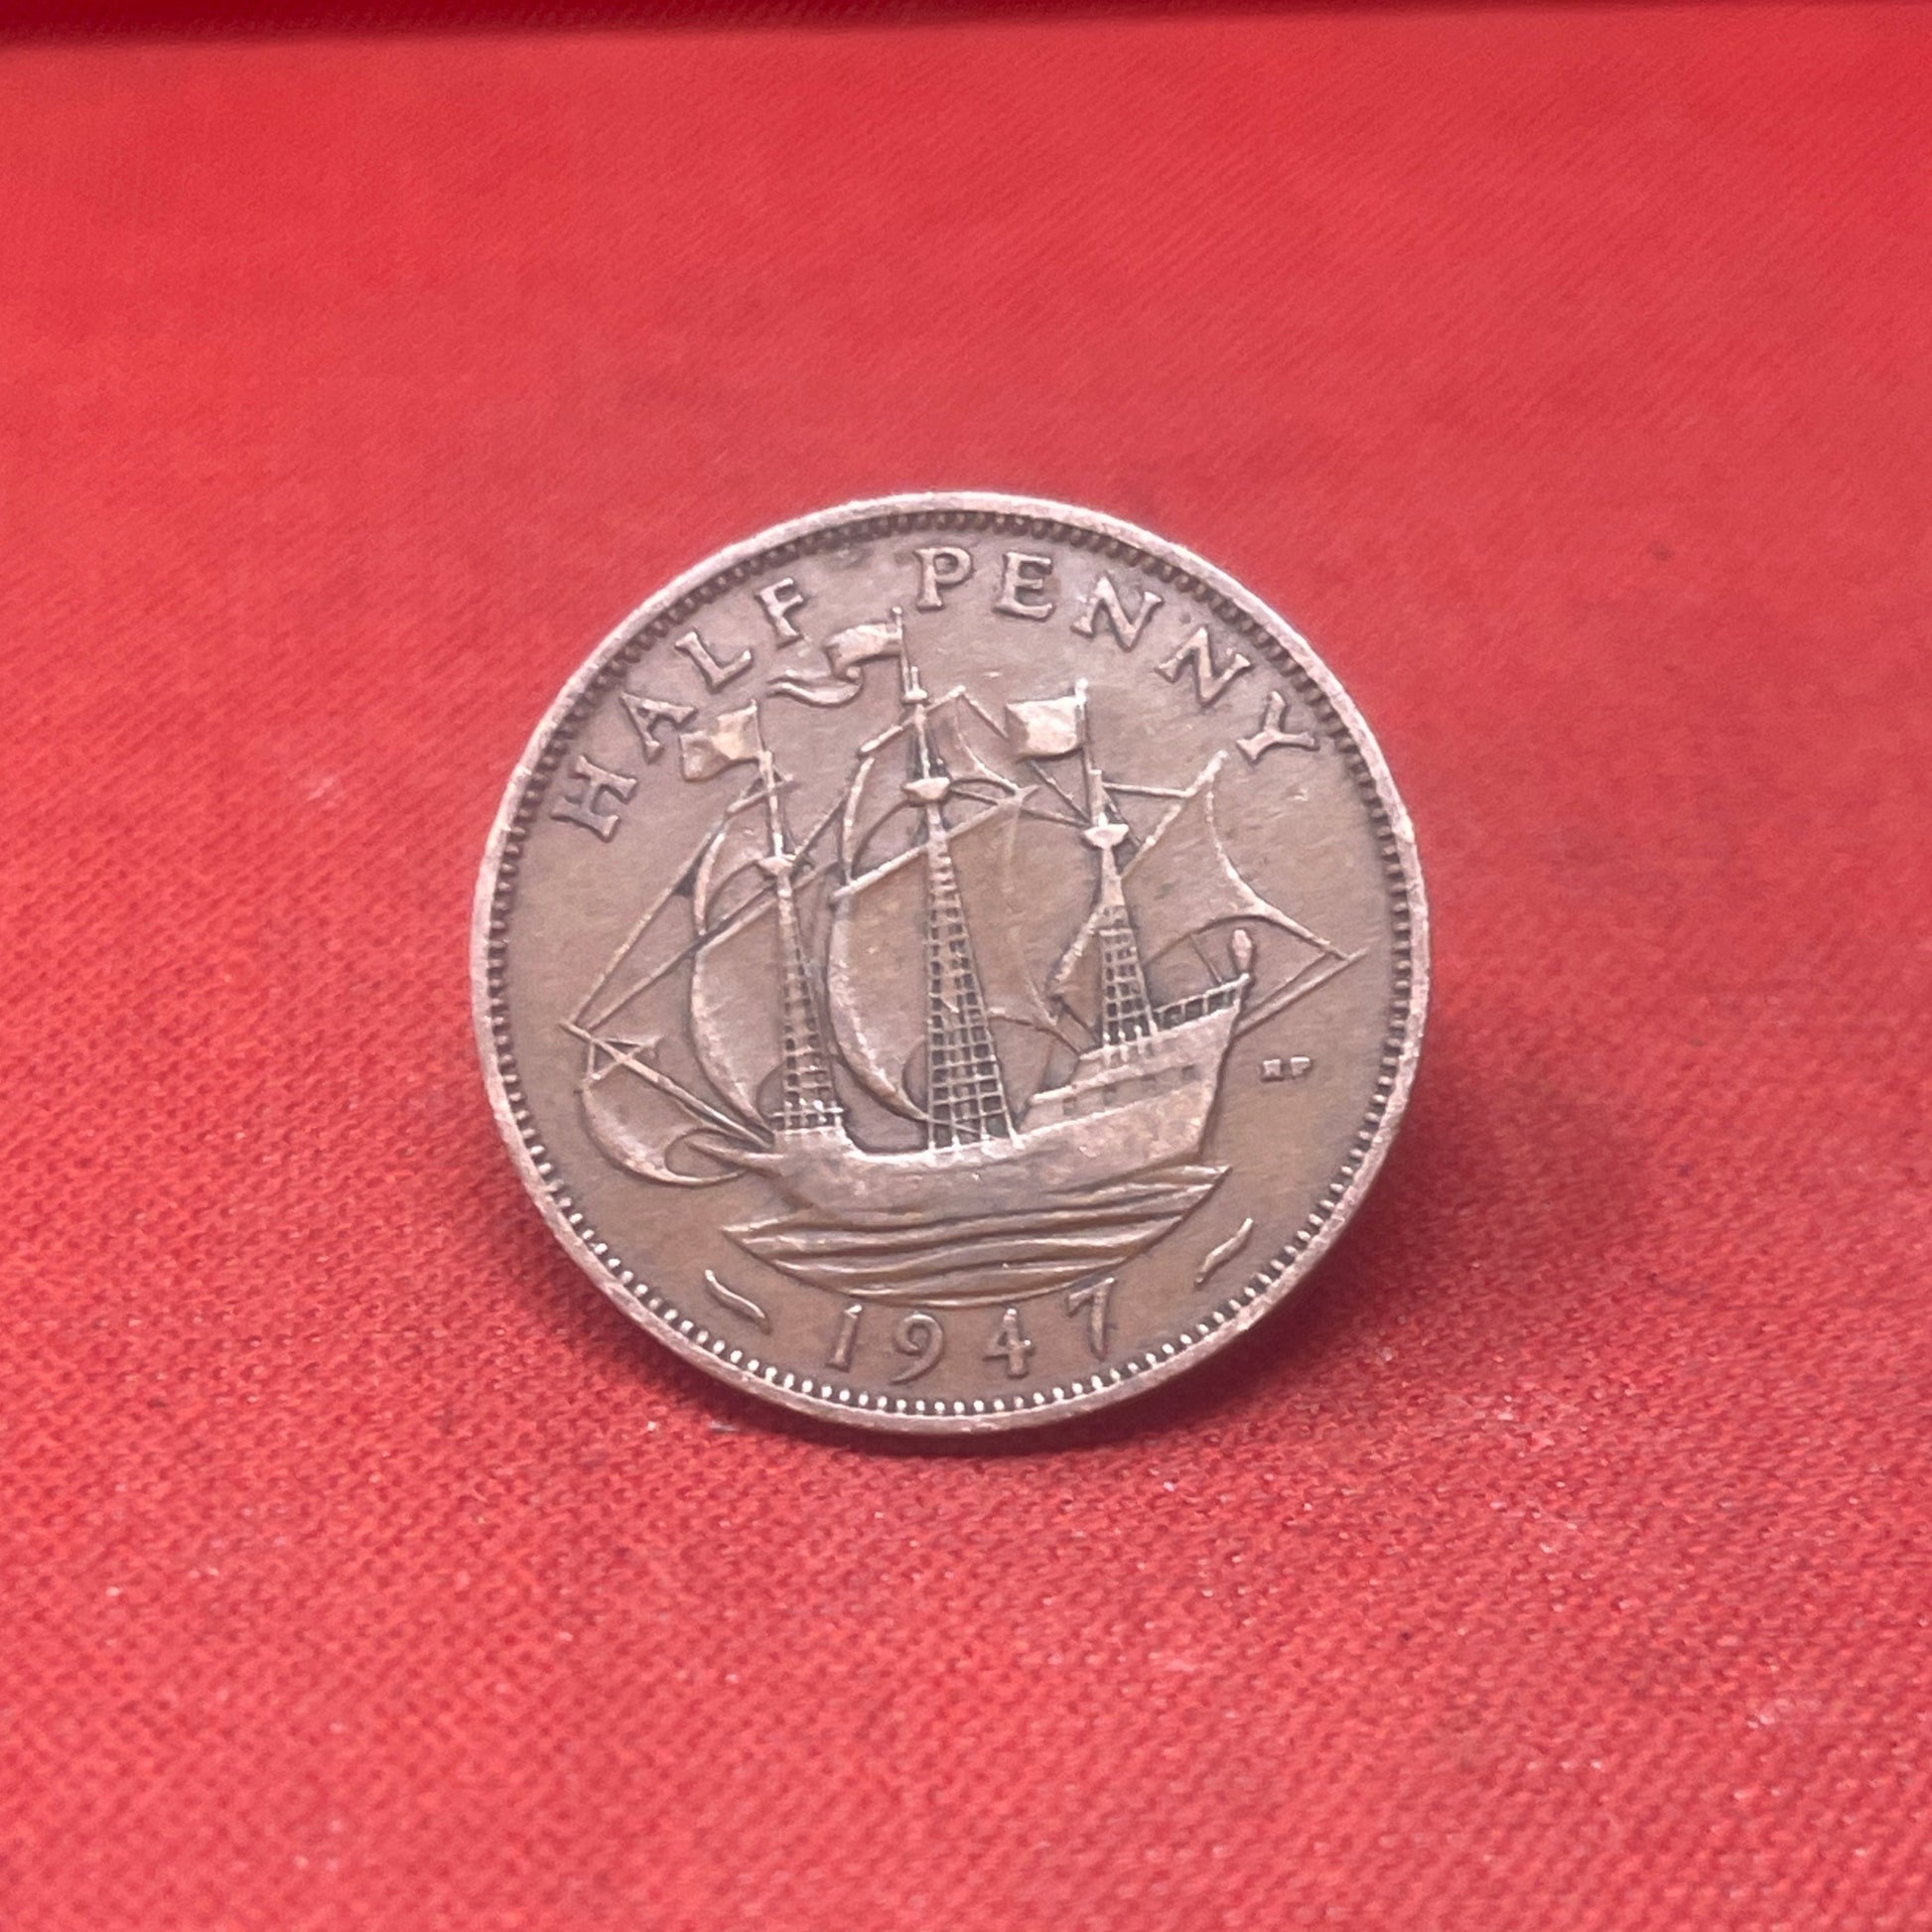 King George VI 1947 Half Penny